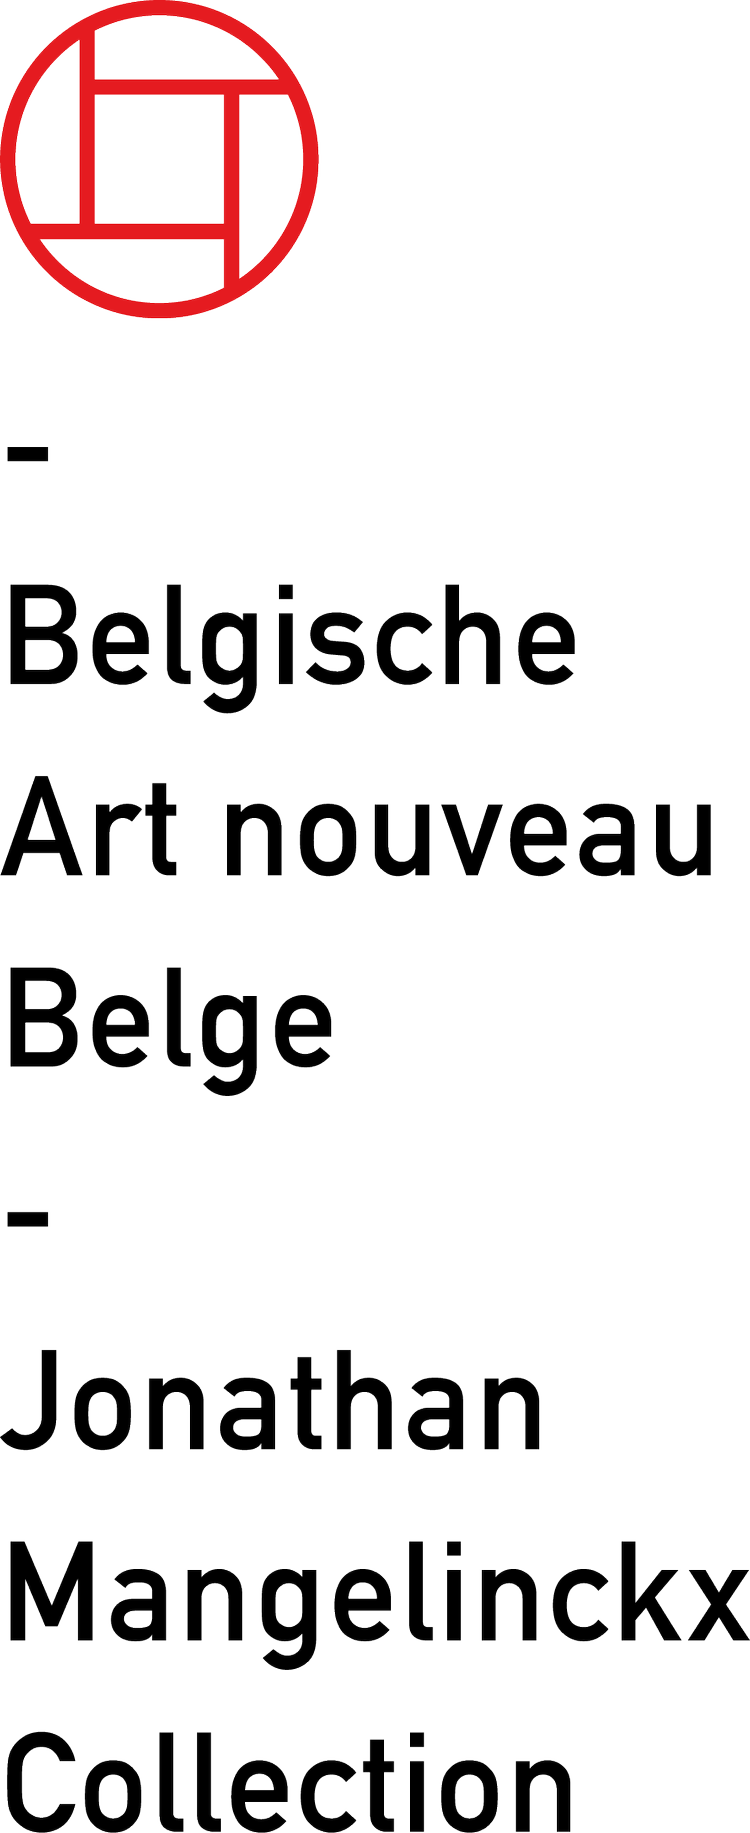 Belgische Art Nouveau Belge / Jonathan Mangelinckx Collection